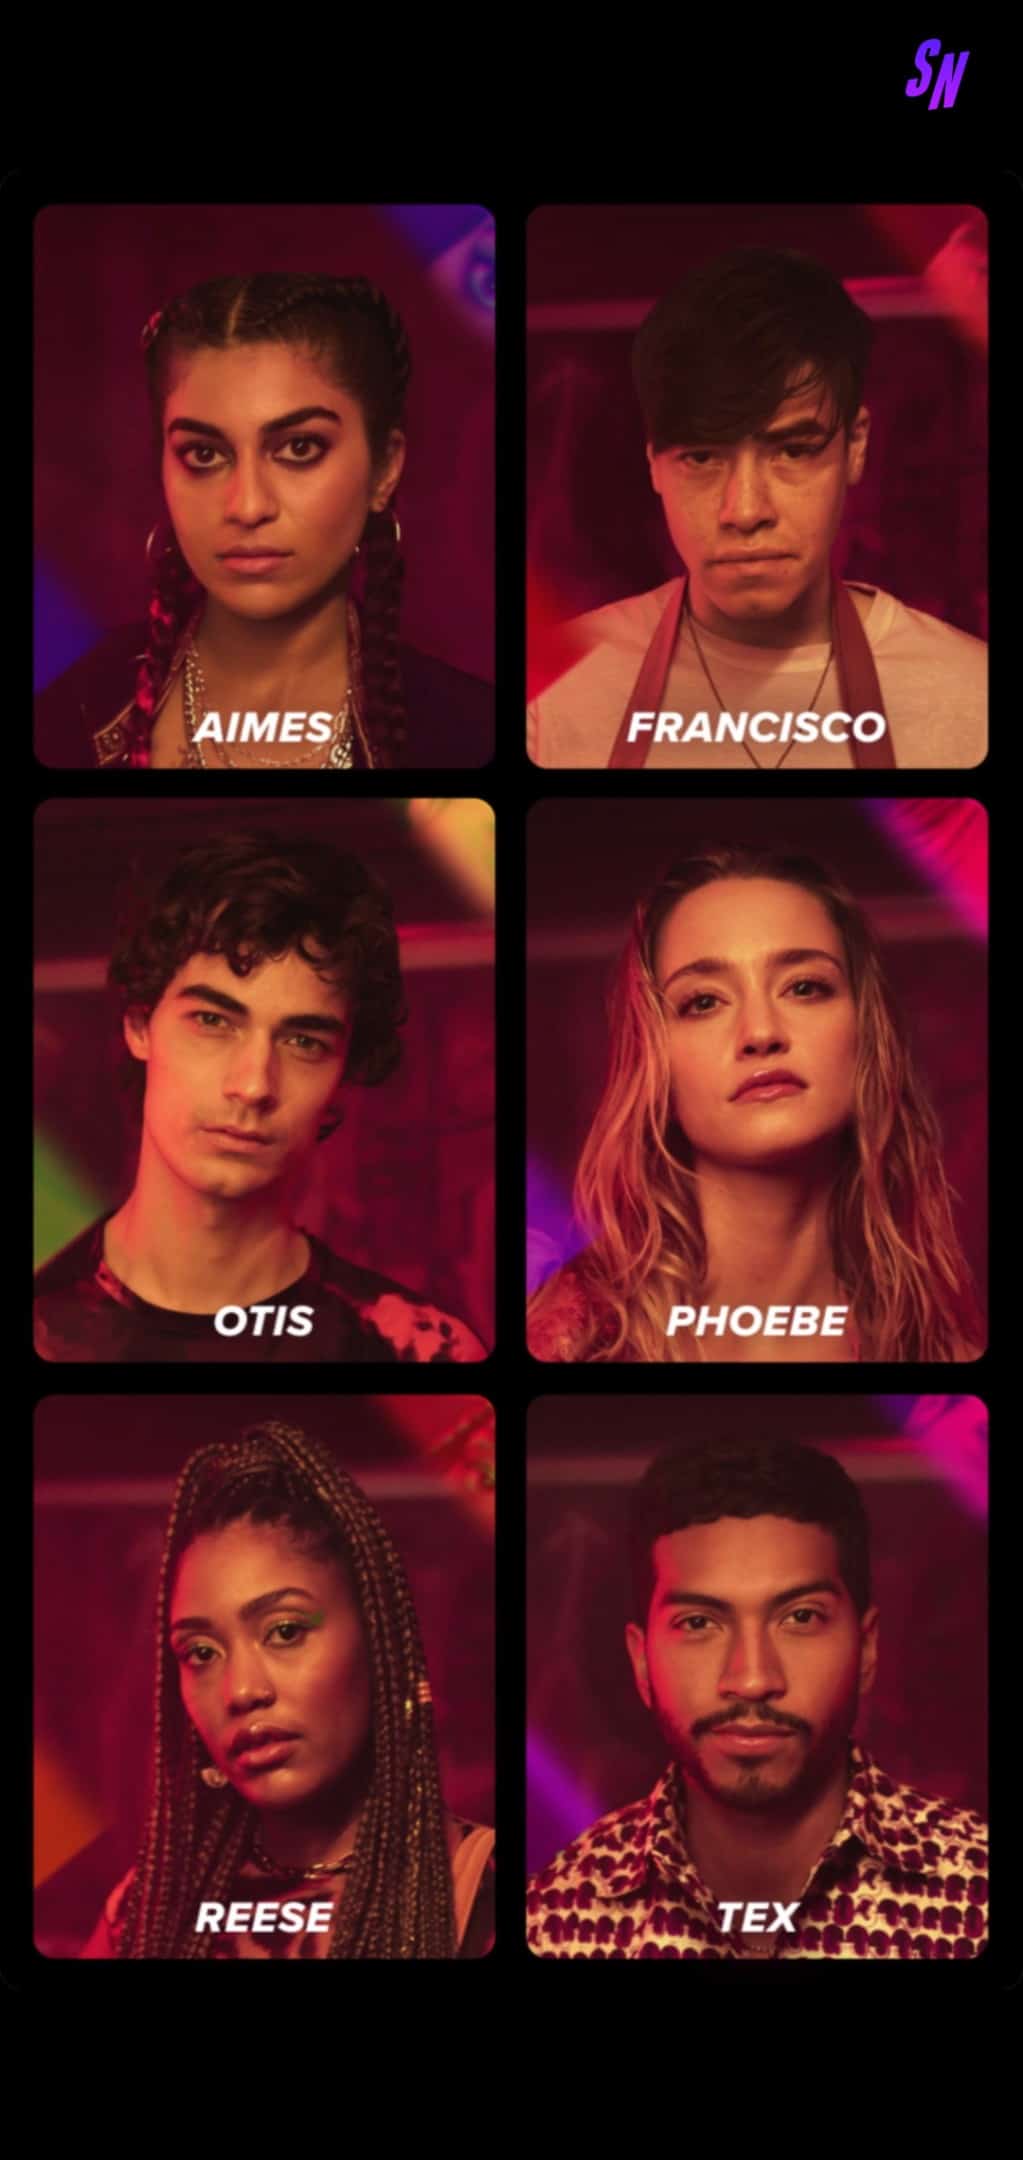 Top to Bottom: Aimes (Ashley Ganger), Francisco (Ivan Carlo), Otis (Emile Ravenet), Phoebe (Francesca Xuereb), Reese (Nozipho Mclean), and Tex (Calvin Seabrooks)